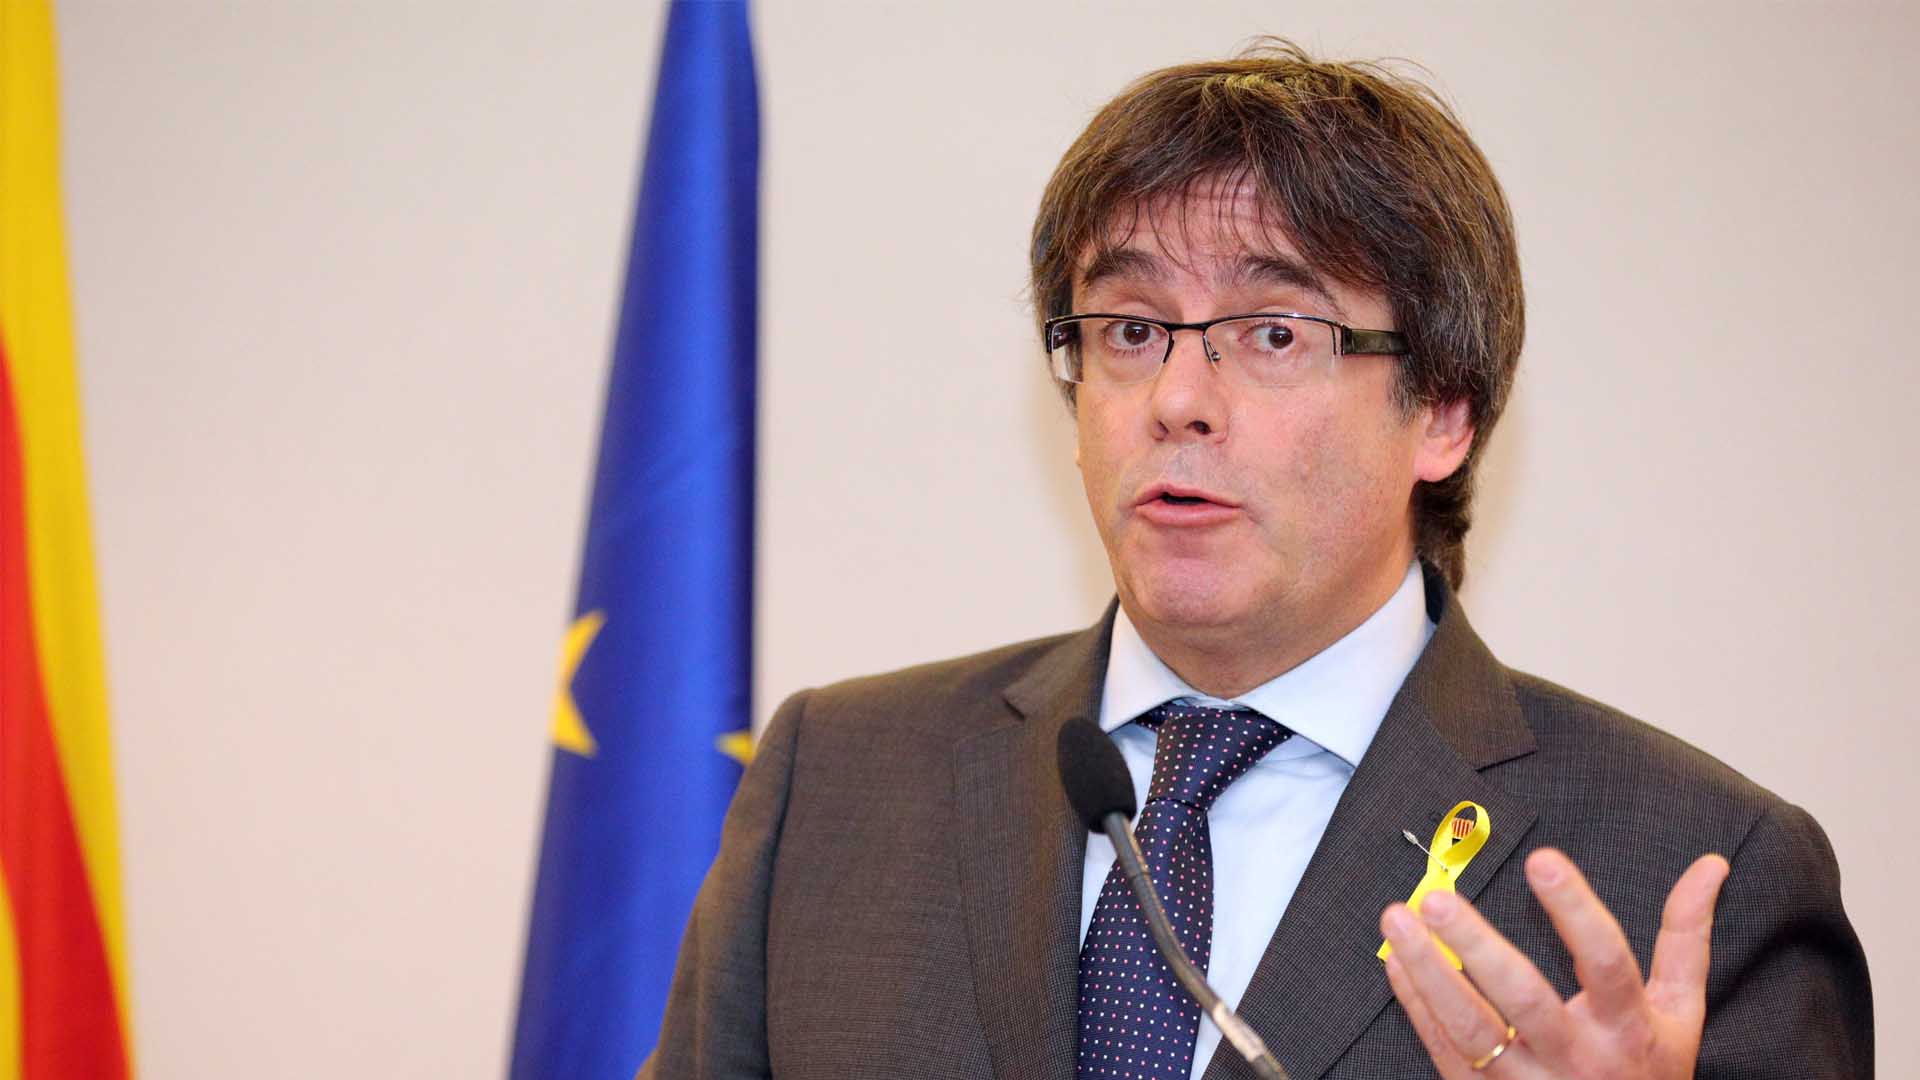 El Gobierno apremia al Parlament a buscar un presidente alternativo al «prófugo» Puigdemont